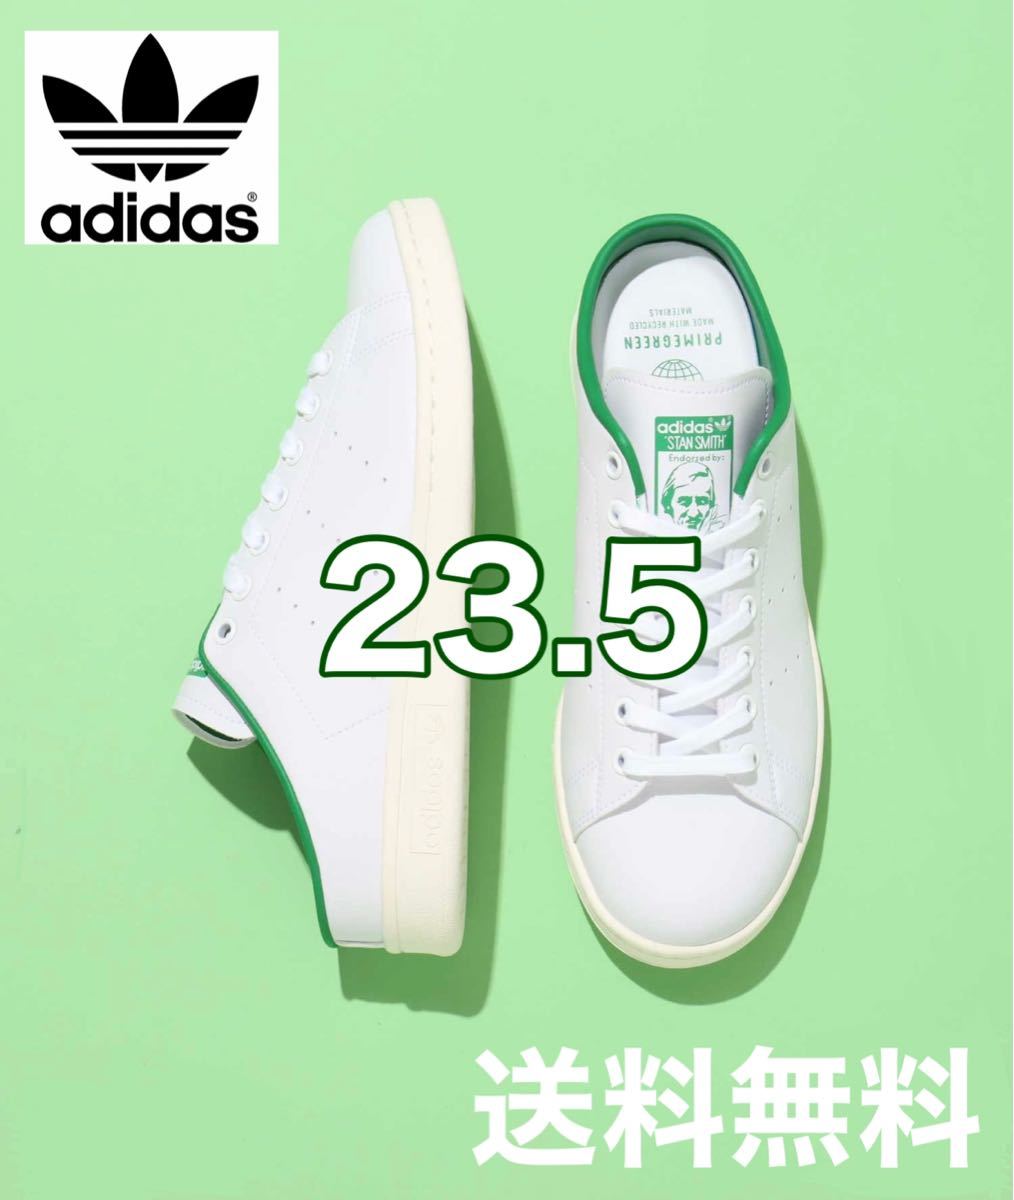 adidas アディダス STAN SMITH スタンスミス ミュール 白 緑 ホワイト